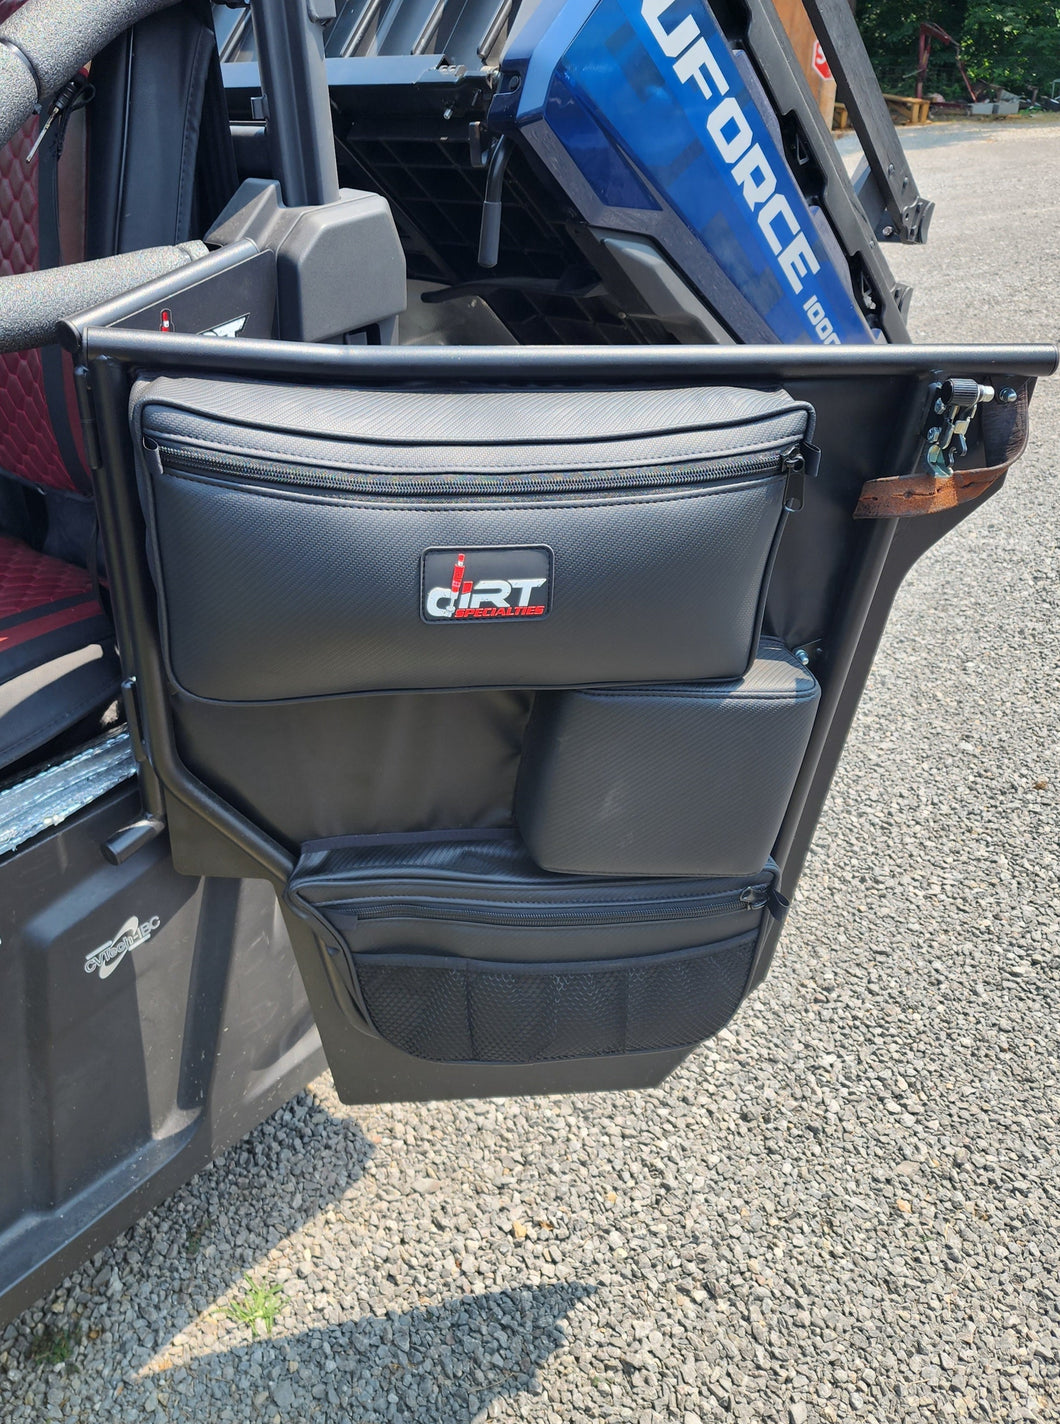 CF MOTO UForce 1000 door Bag Set  (for USE WITH  DIRT SPECIALTIES UFORCE DOORS)